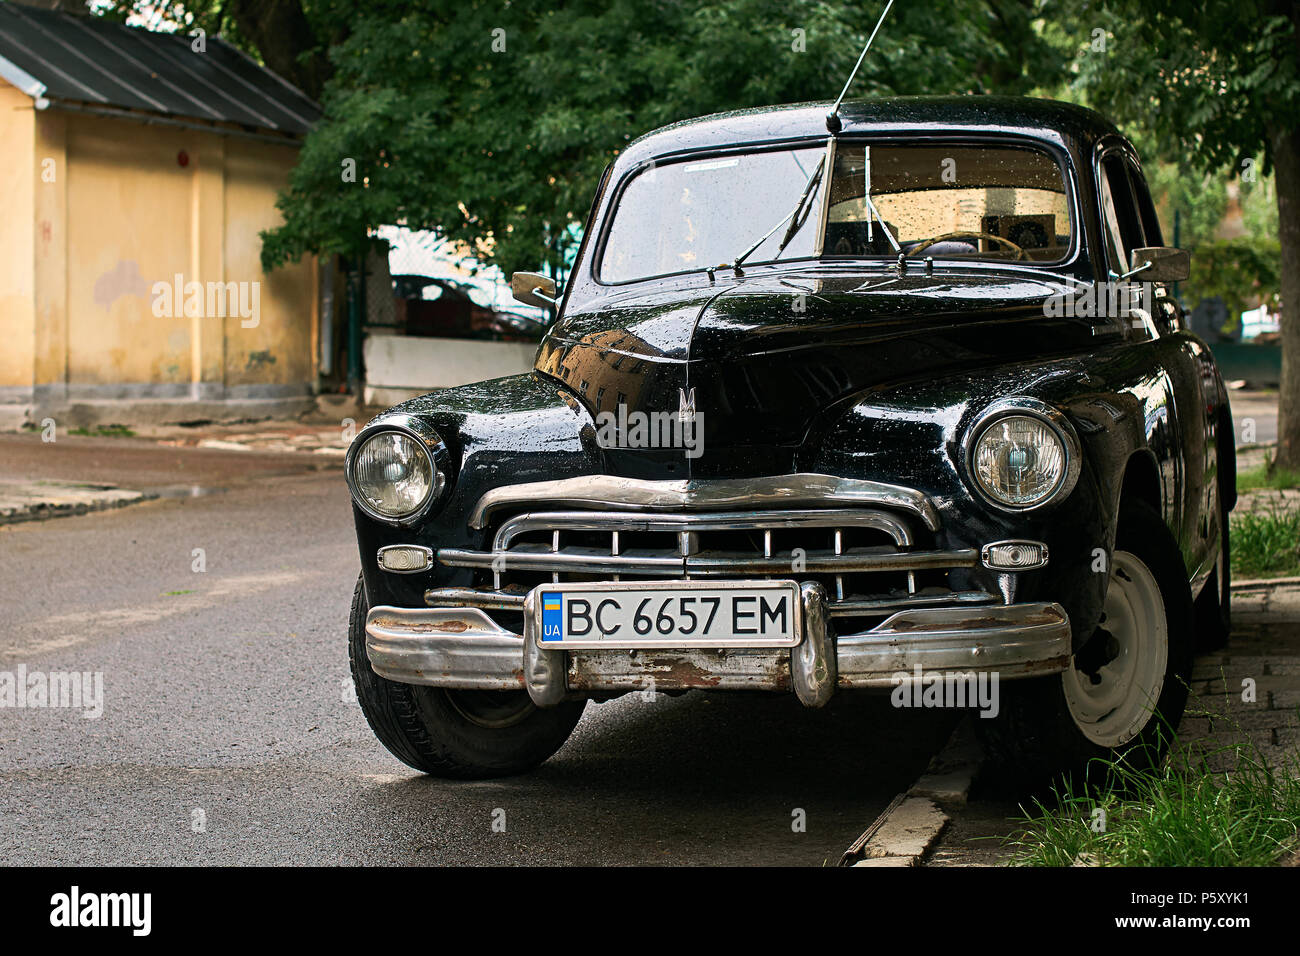 Vintage schwarz GAZ-M20 Pobeda Auto freigegeben ca. 1950 in der UDSSR auf  der Straße geparkt Stockfotografie - Alamy